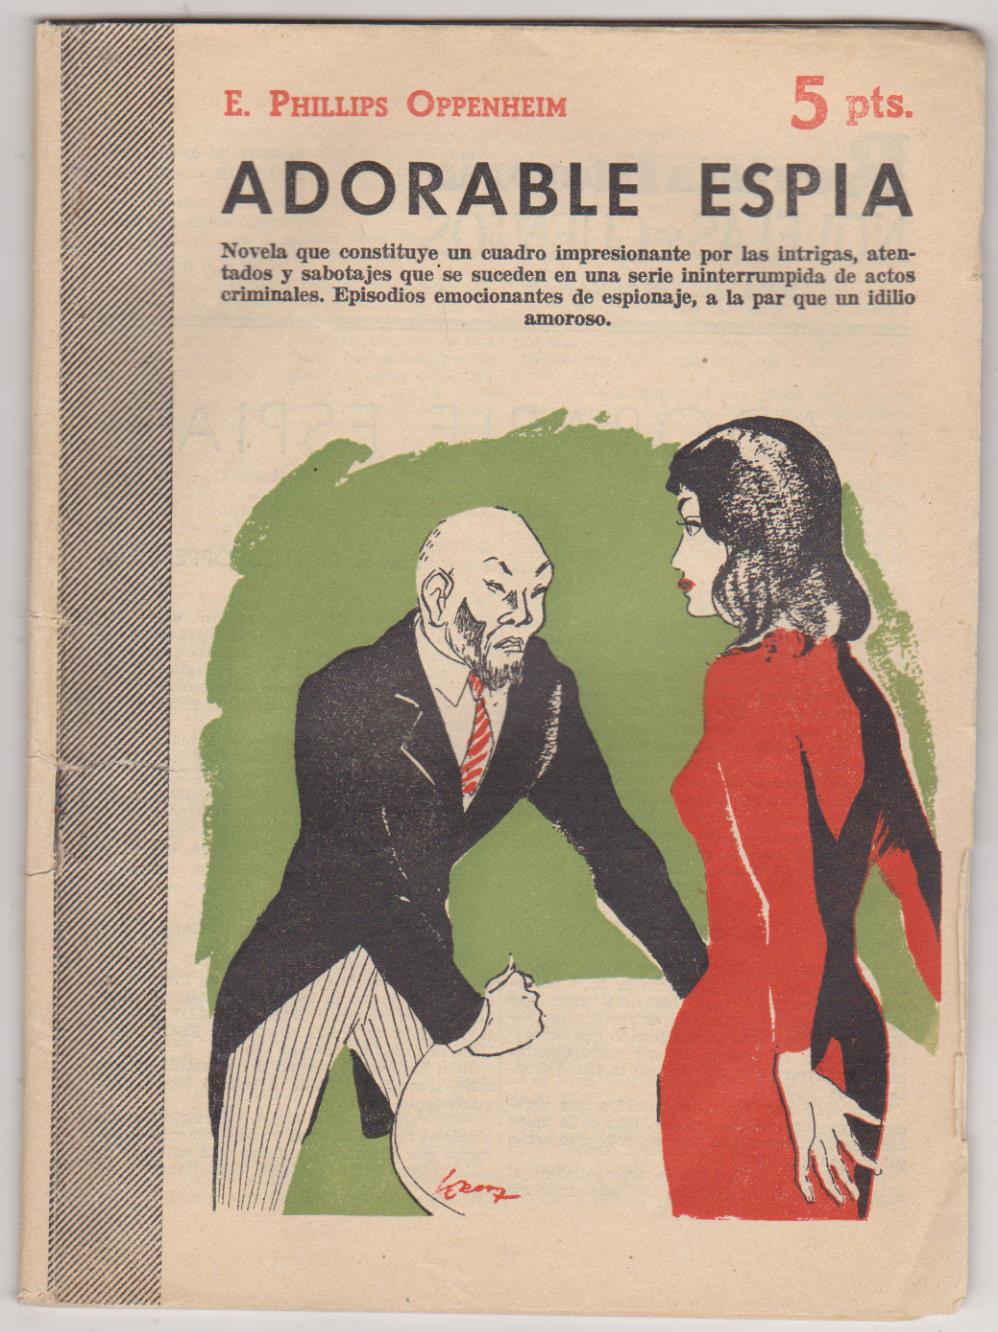 Revista Literaria nº 1363. E. Phillips Oppenheim. Adorable espía. Año 1957